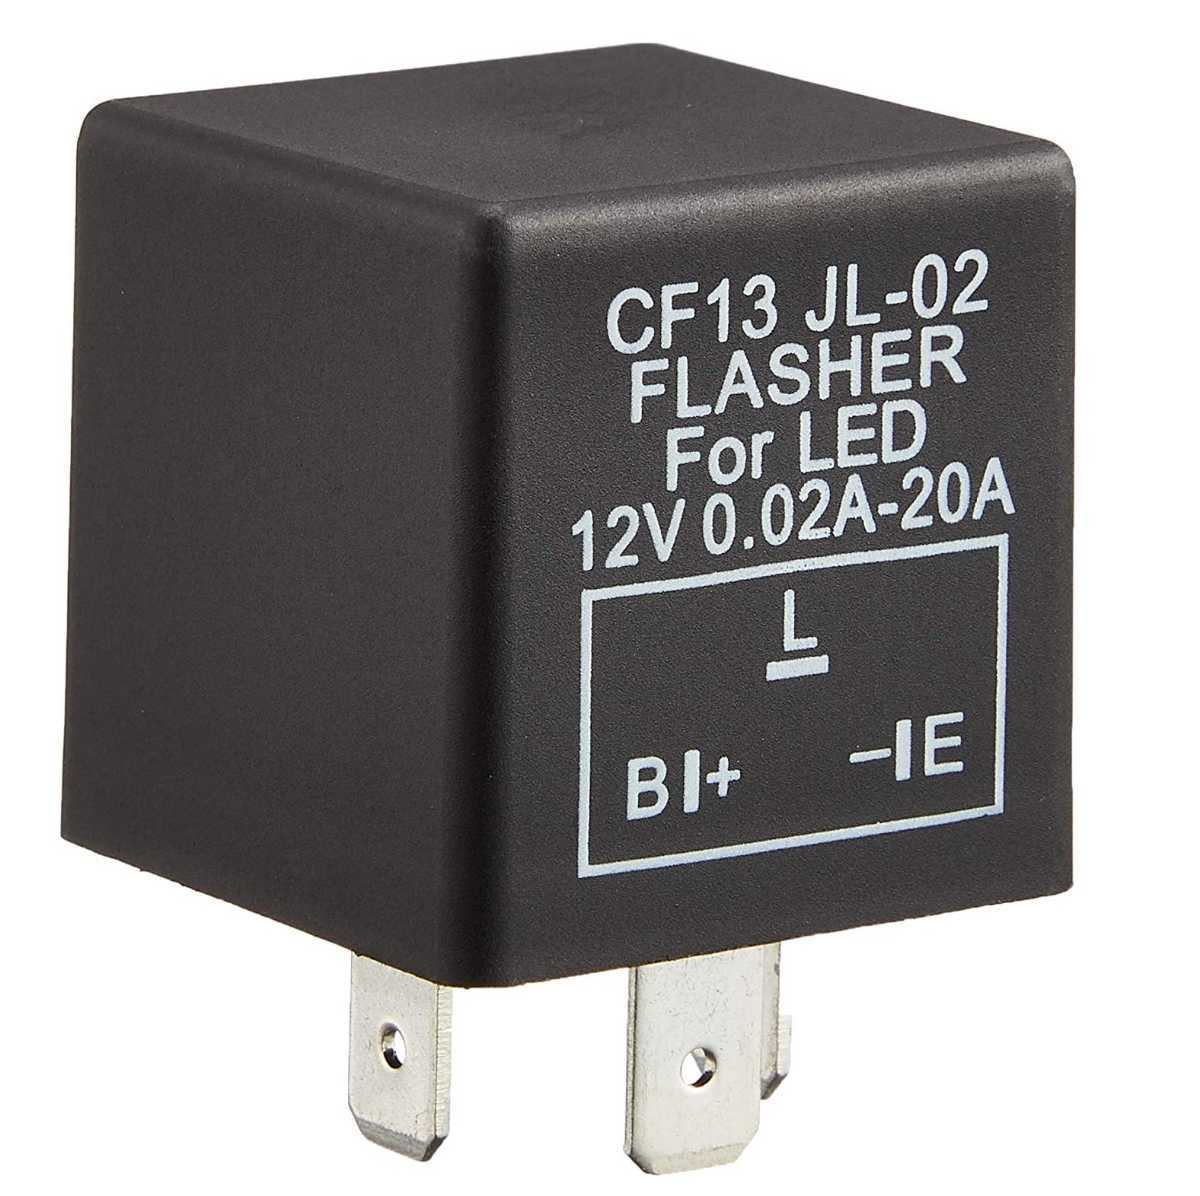 送料無料 CF13 12V LED対応 IC ウインカーリレー 3ピン ハイフラ防止 カチカチ音有り C92の画像1